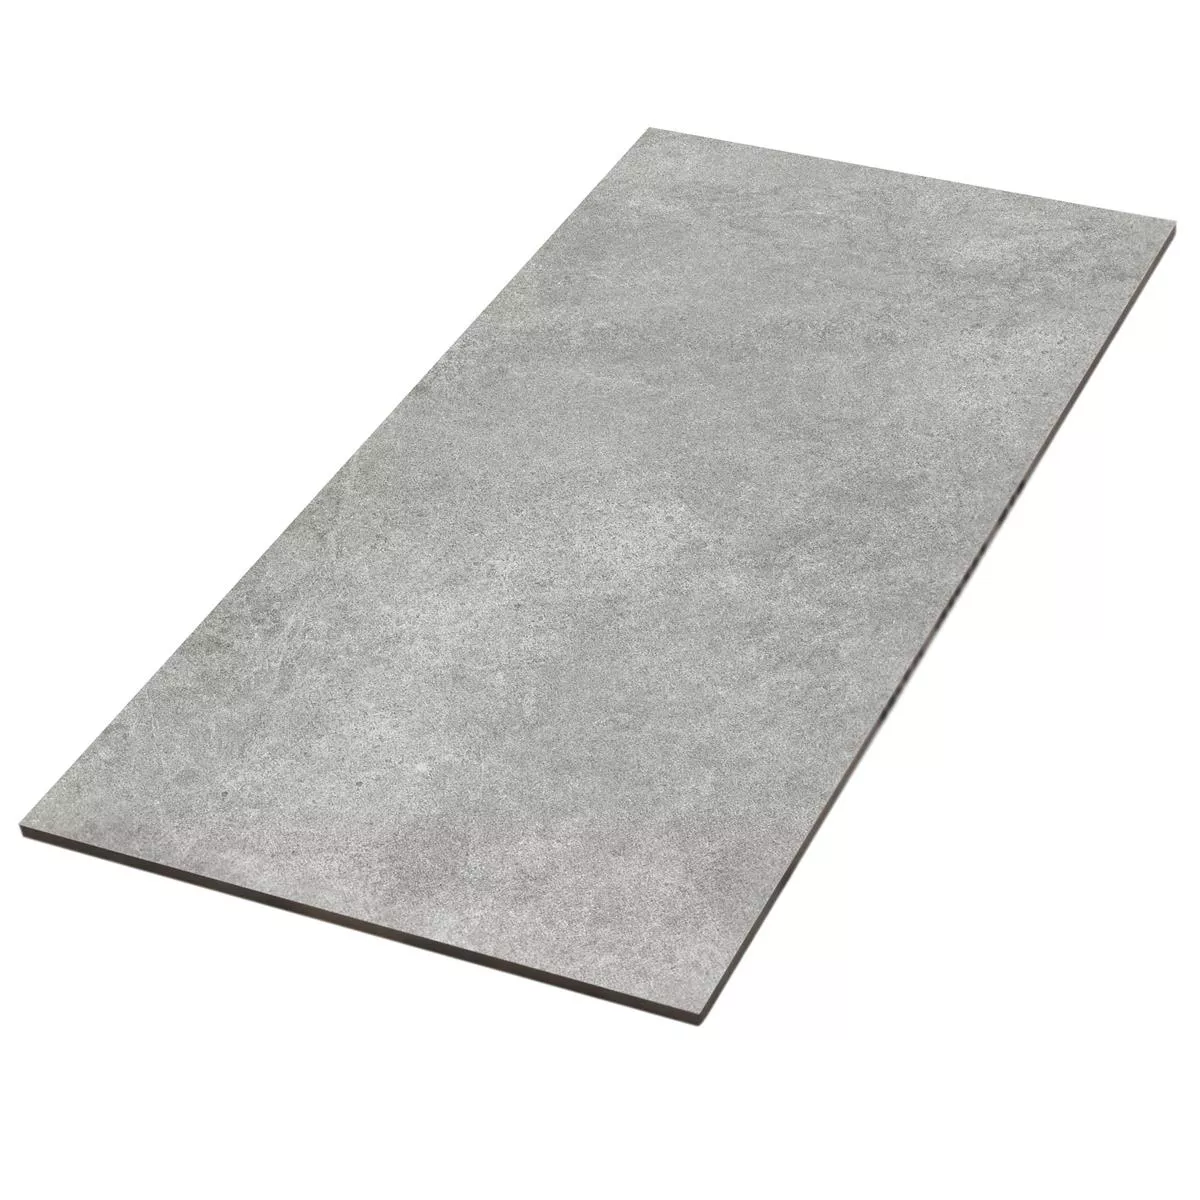 Floor Tiles Montana Unglazed Dark Grey 30x60cm / R10B